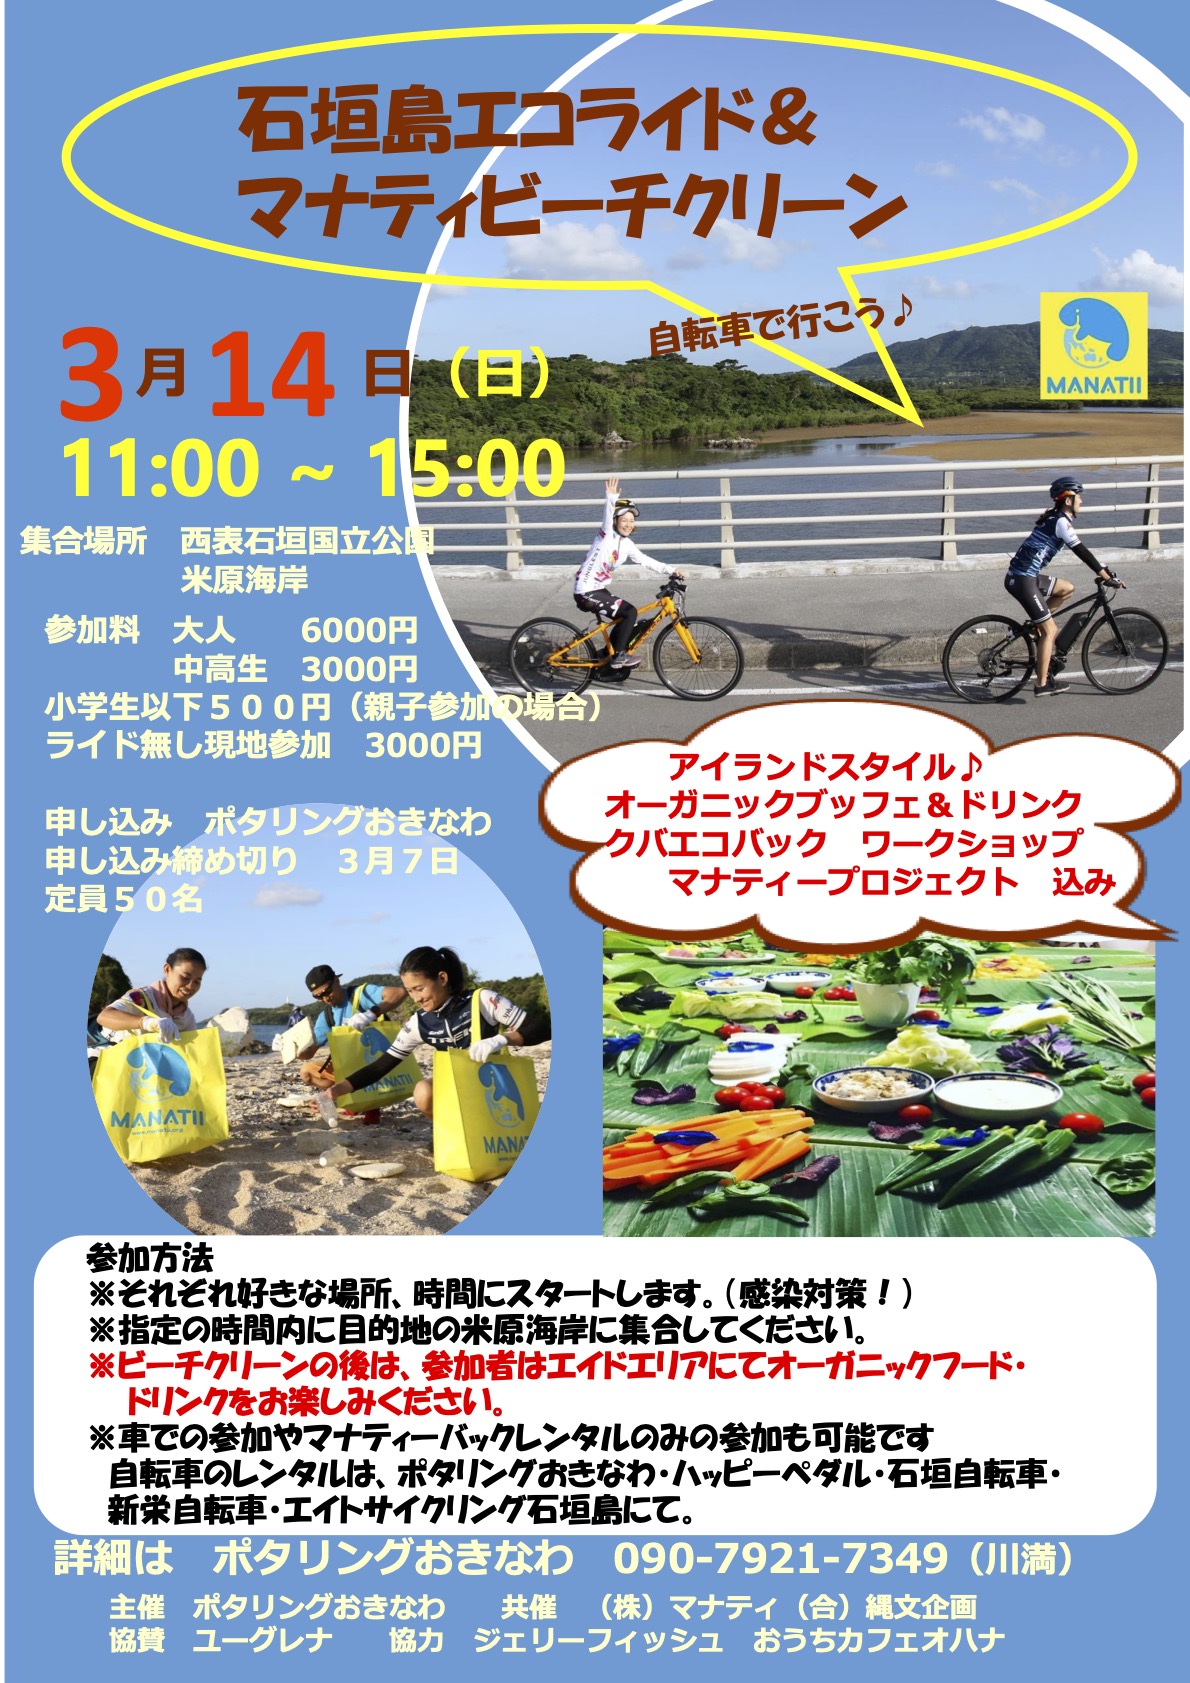 【活動報告】石垣島エコライド&ビーチクリーン無事に終了しました！